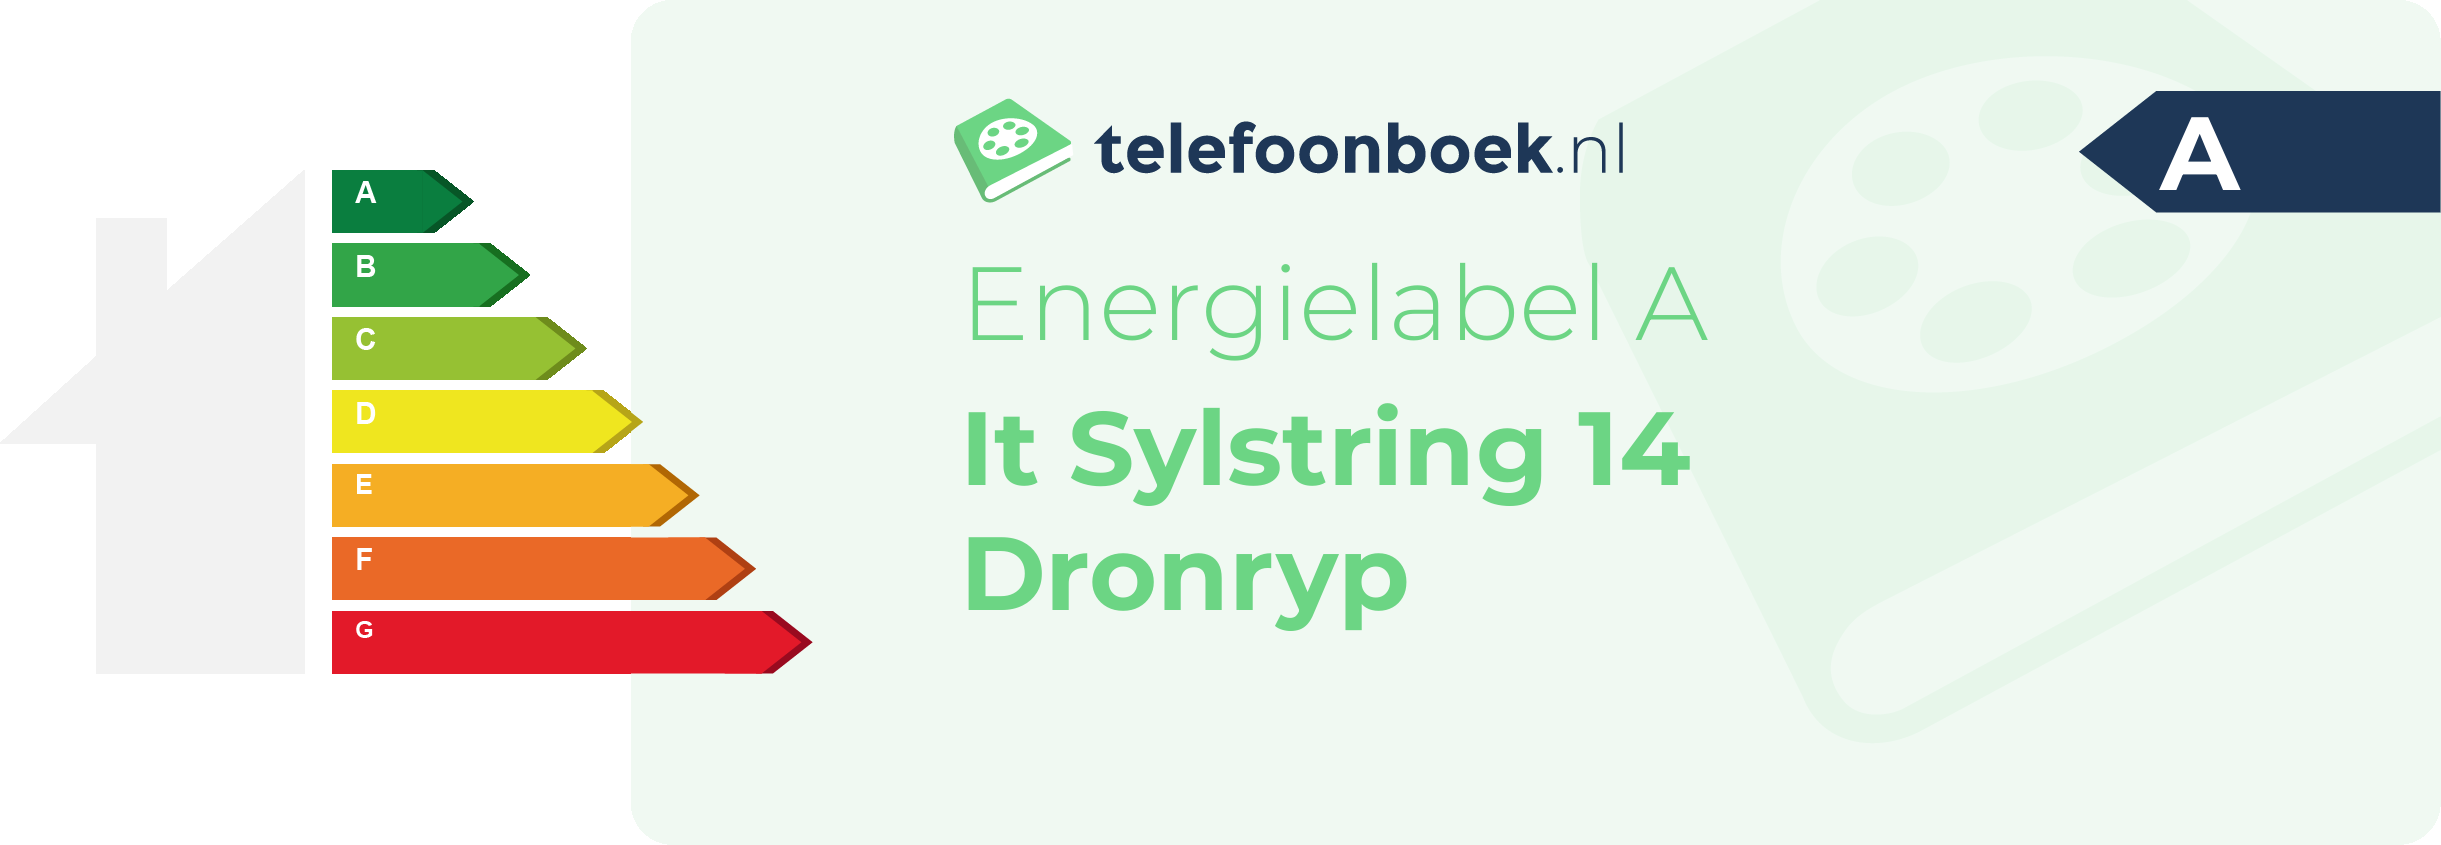 Energielabel It Sylstring 14 Dronryp